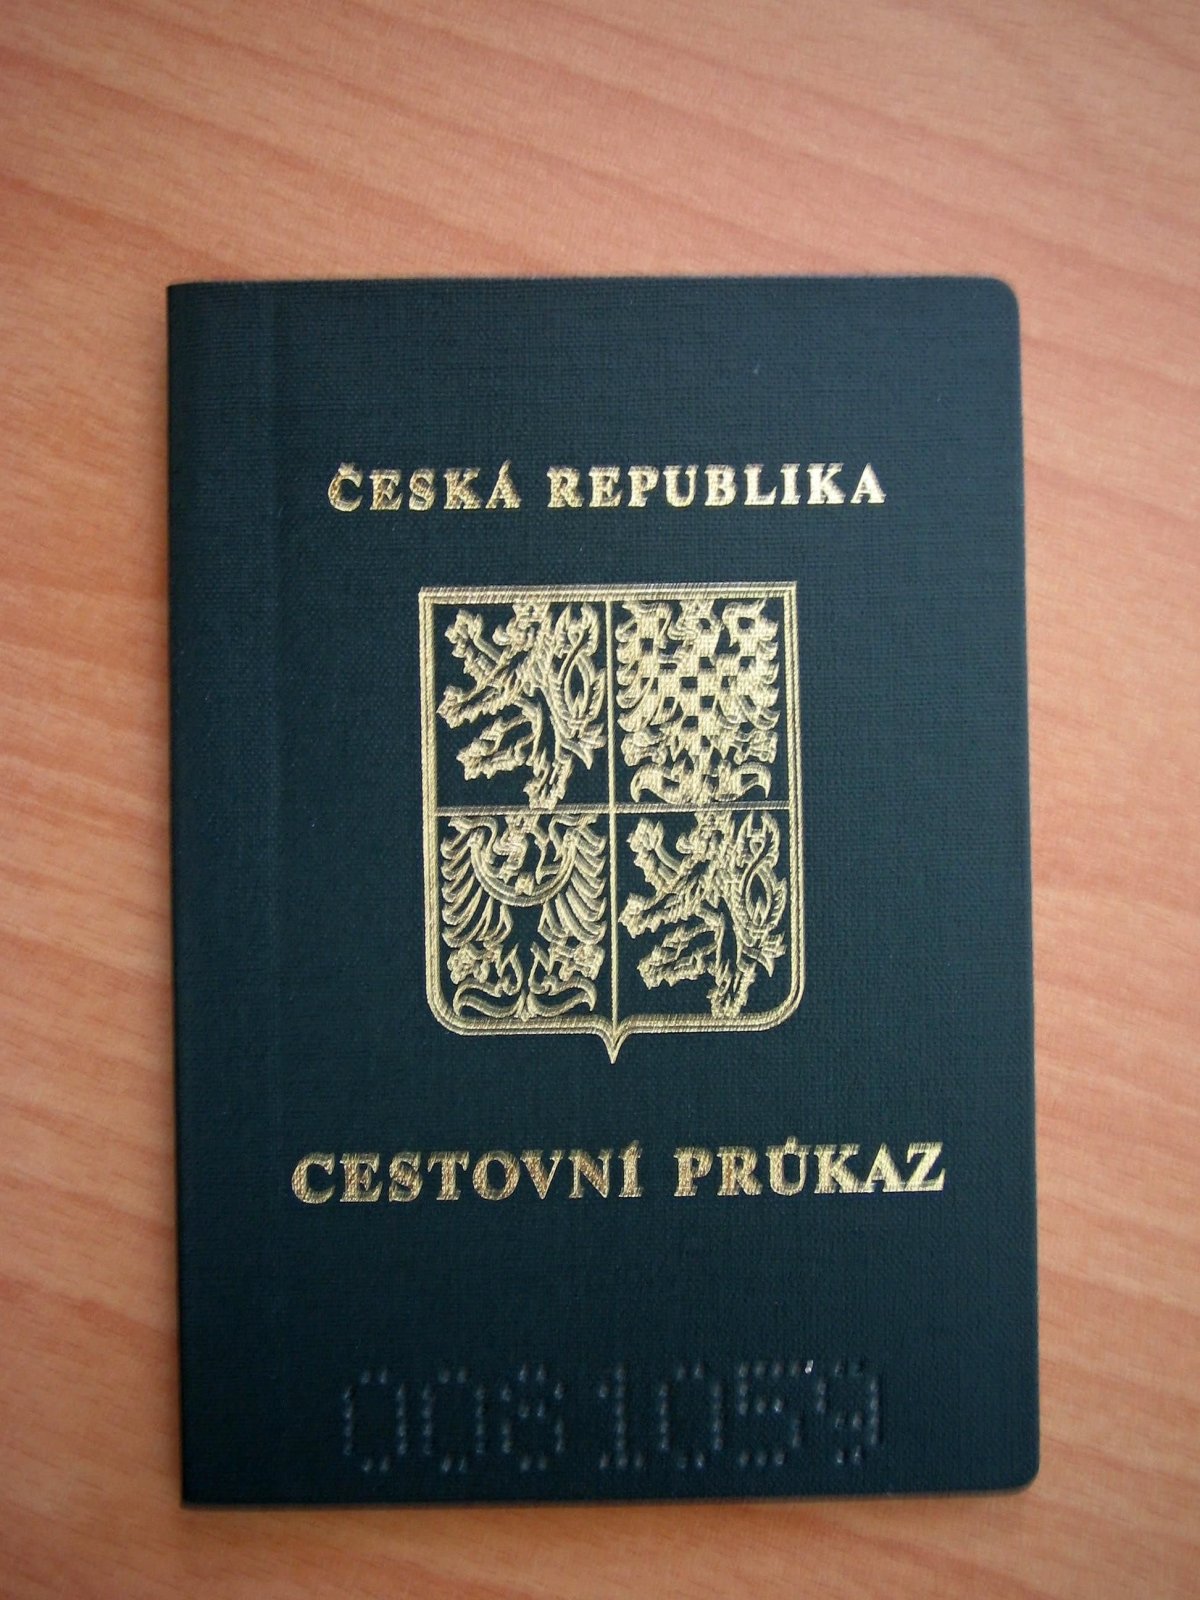 Co když Stratím pas?